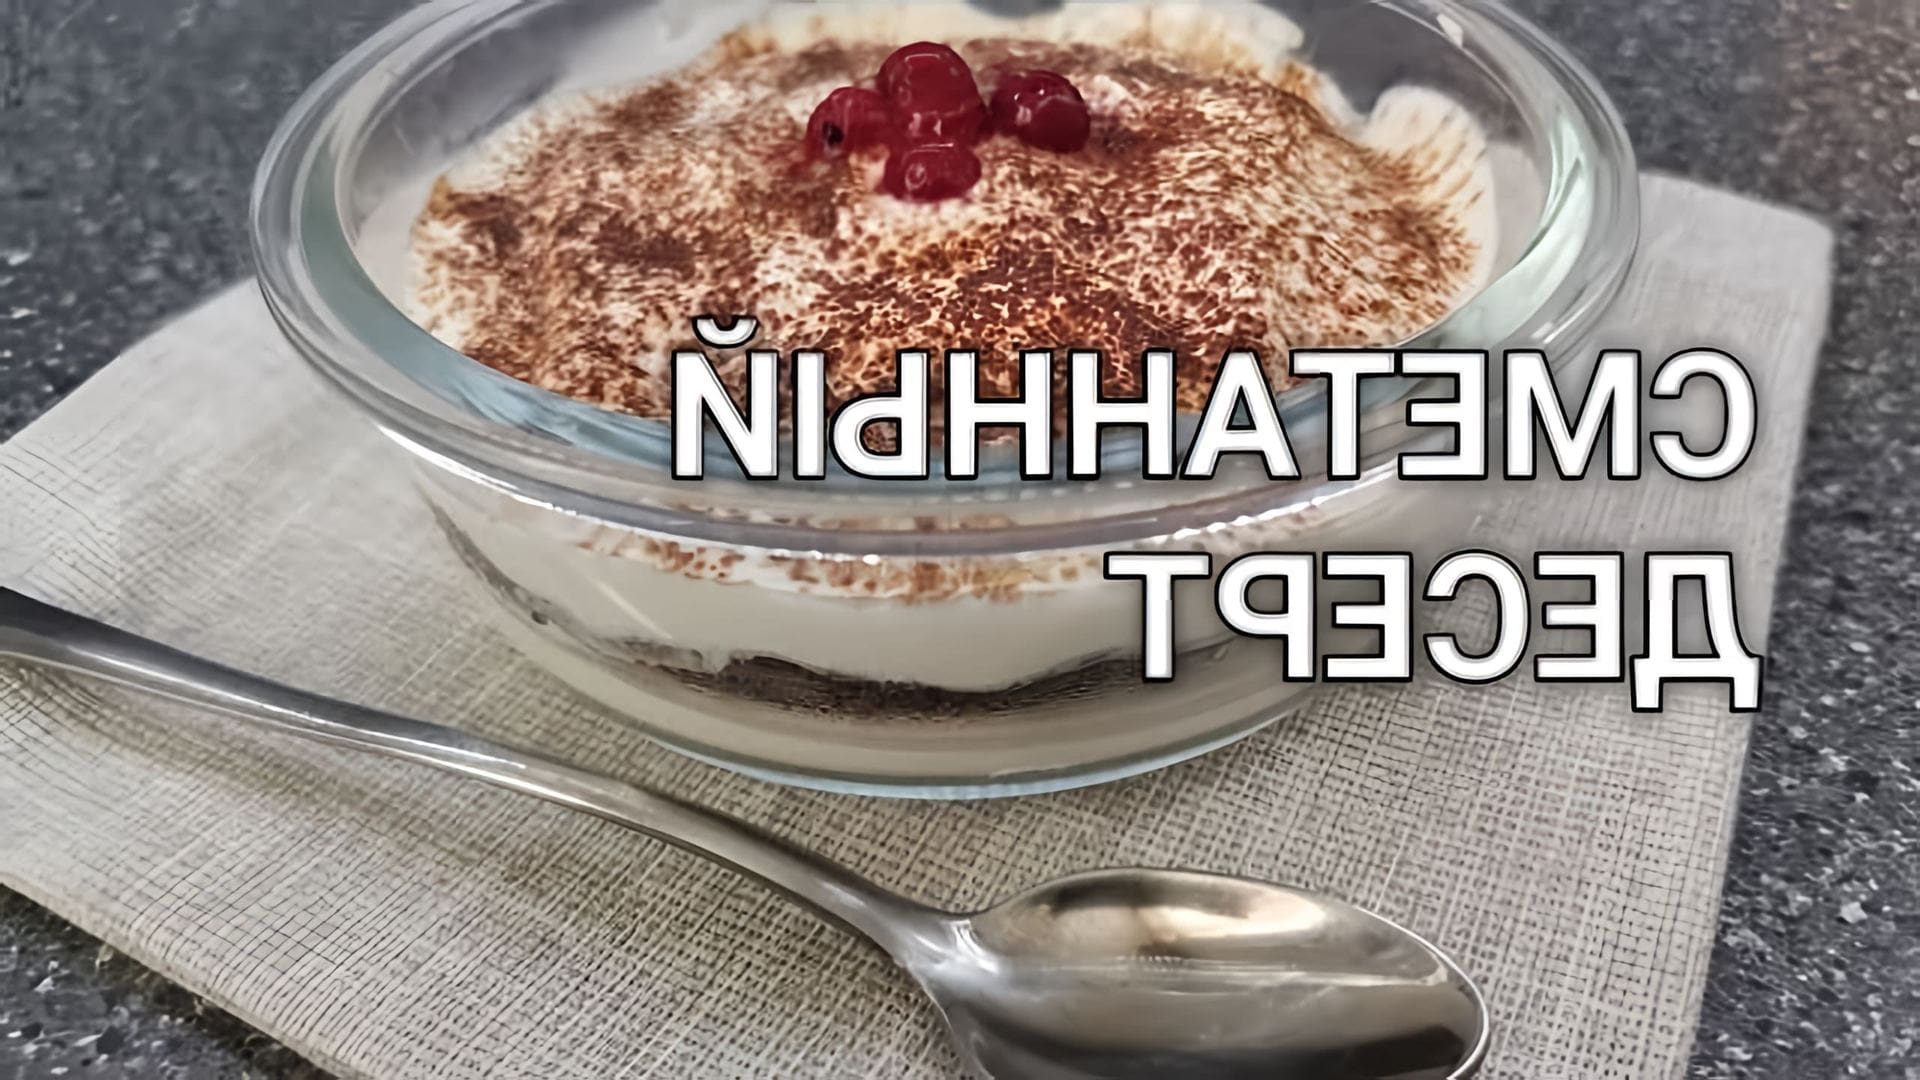 В этом видео демонстрируется рецепт приготовления кето-десерта без муки, сахара и шоколада